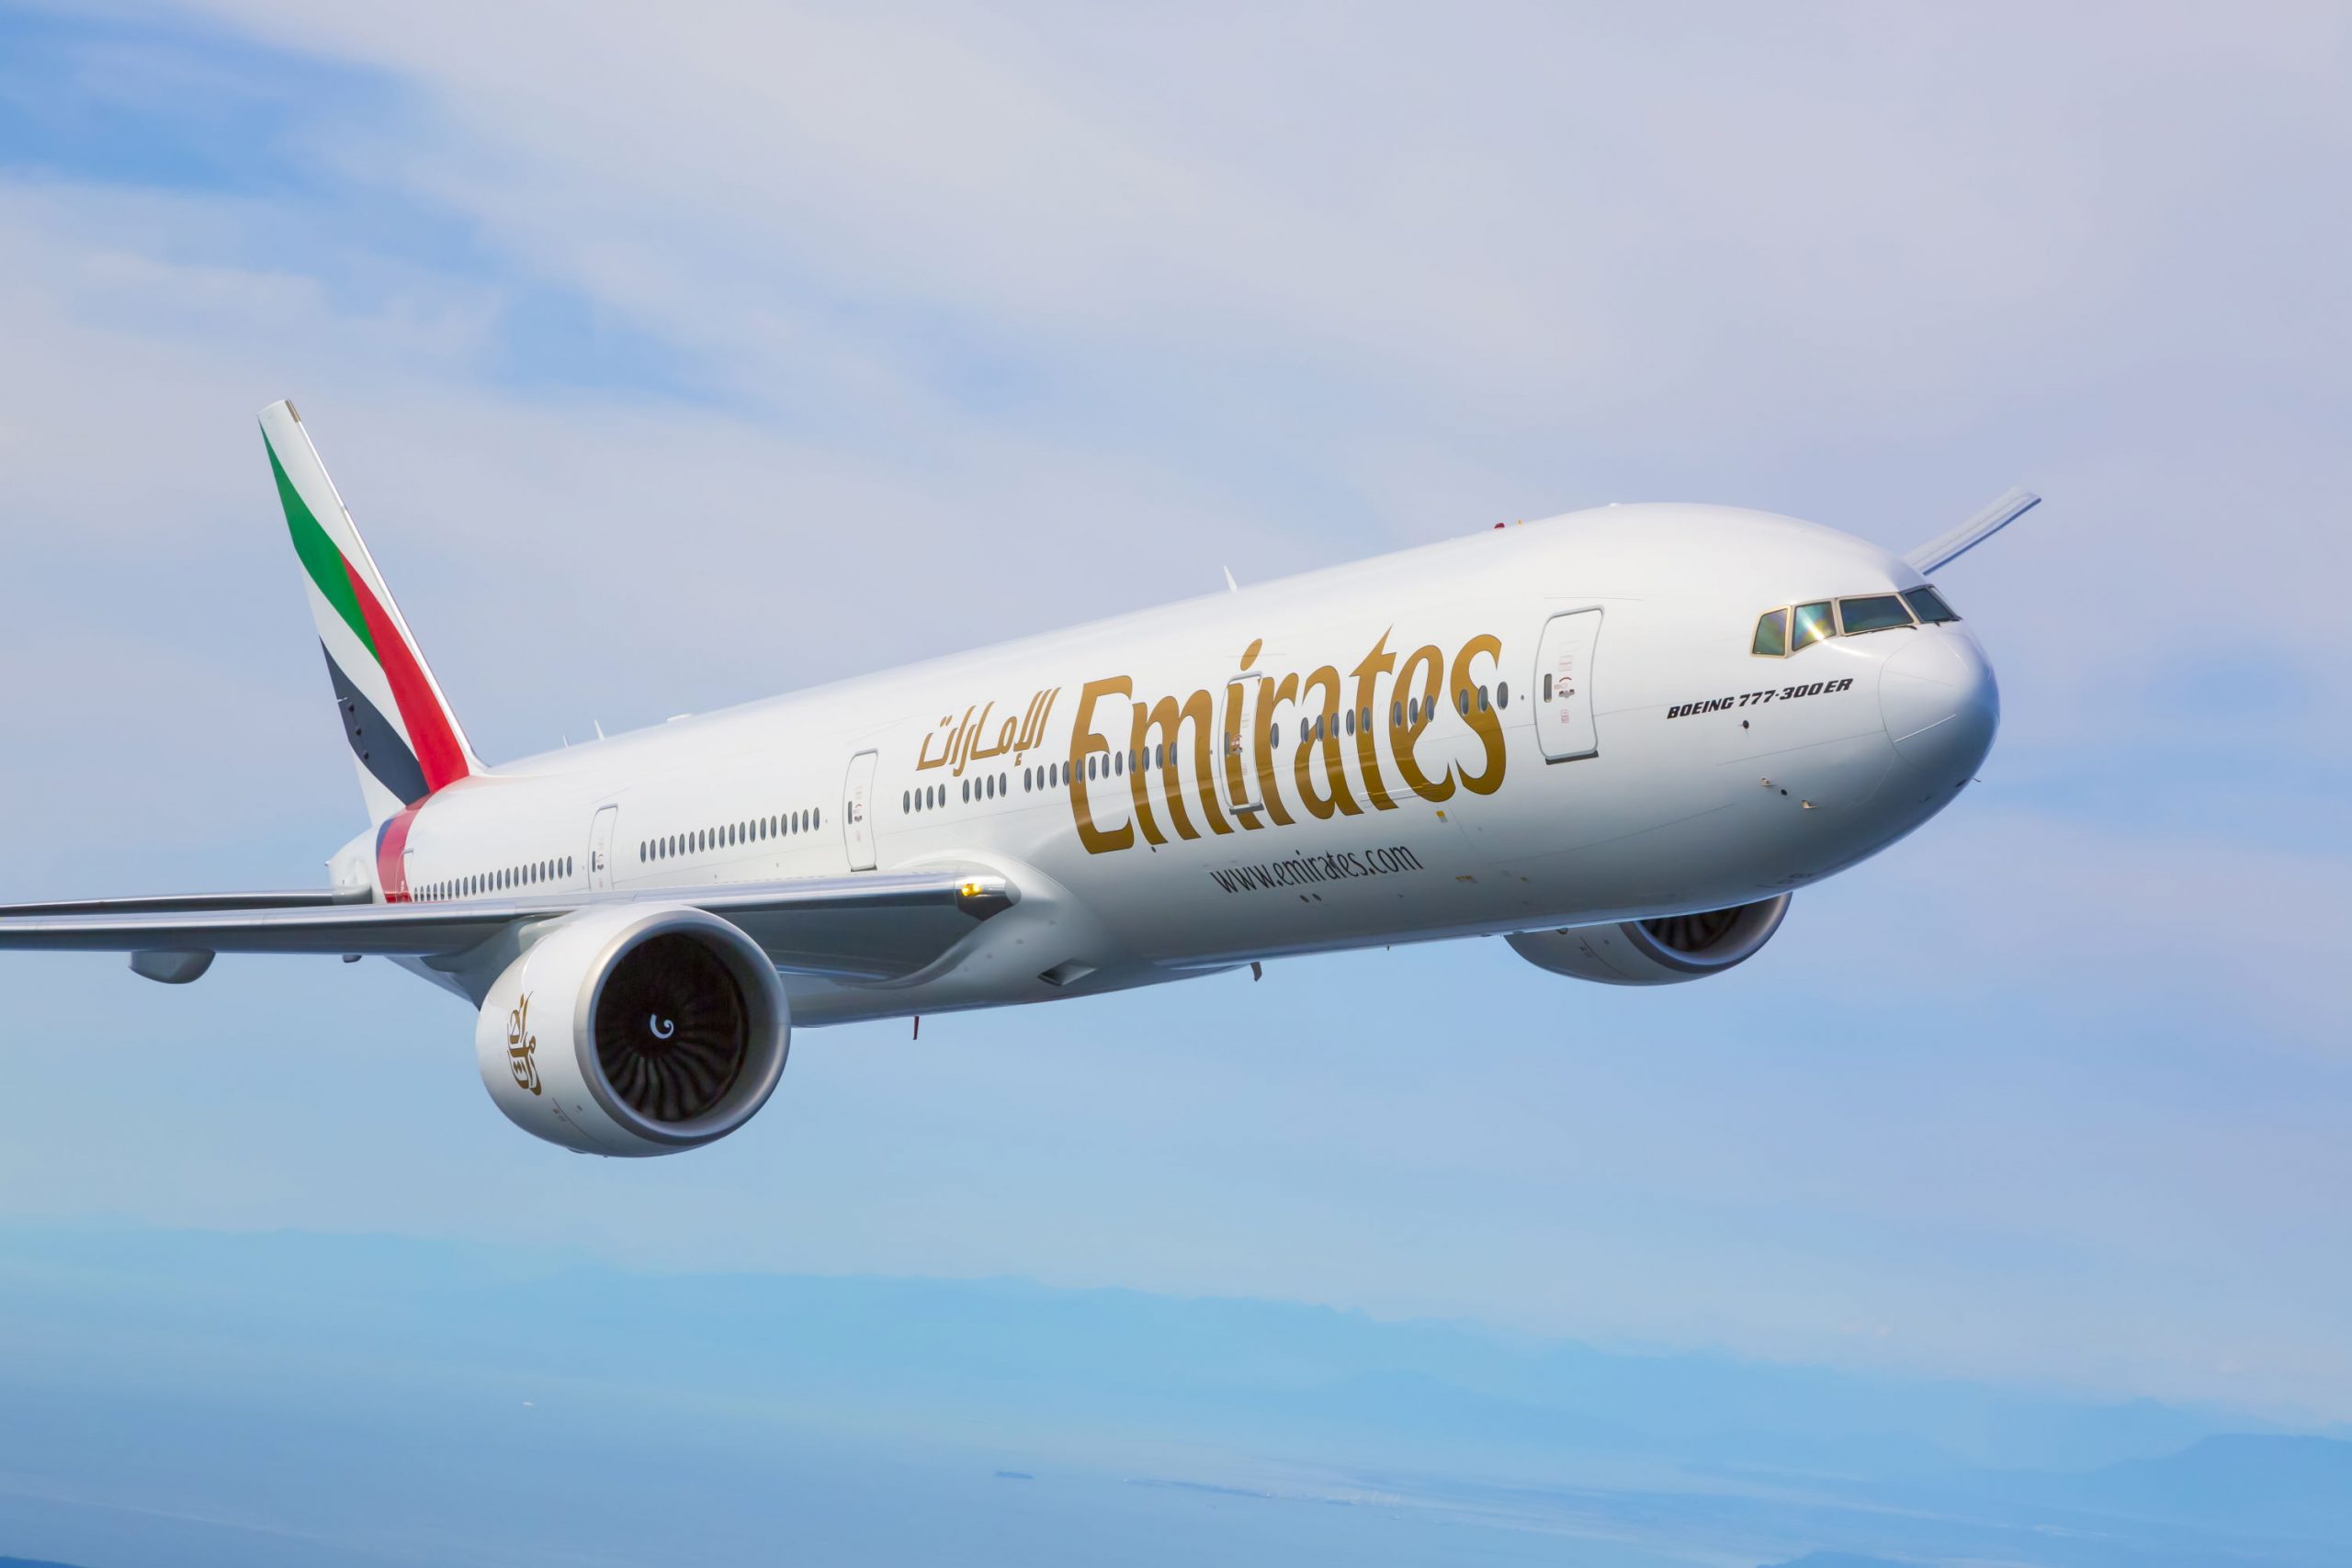 PRZEGLĄD PROMOCJI: oferta Emirates do 24 stycznia 2022